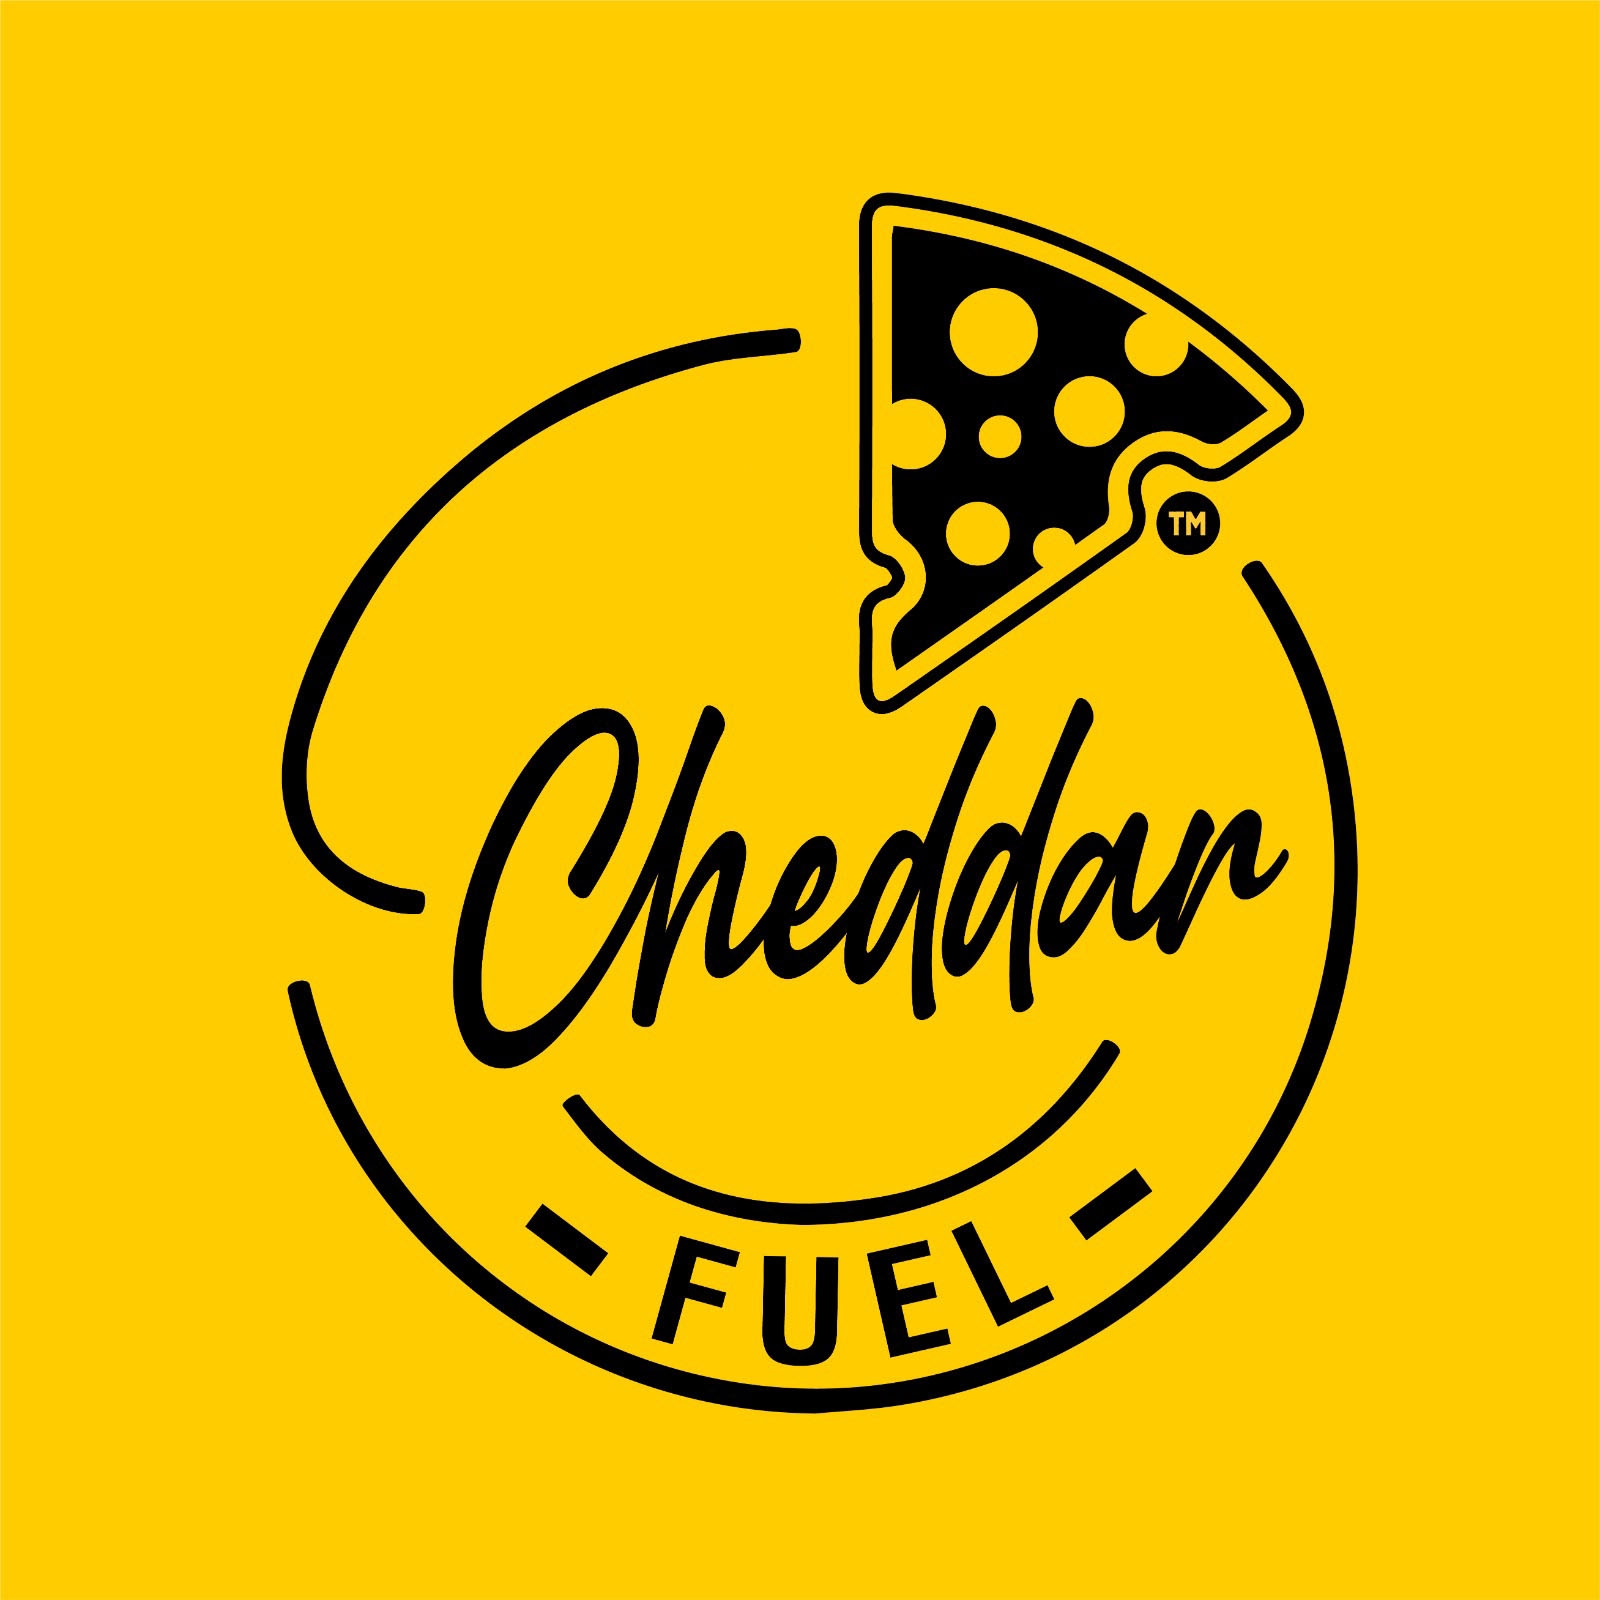 Cheddar Fuel